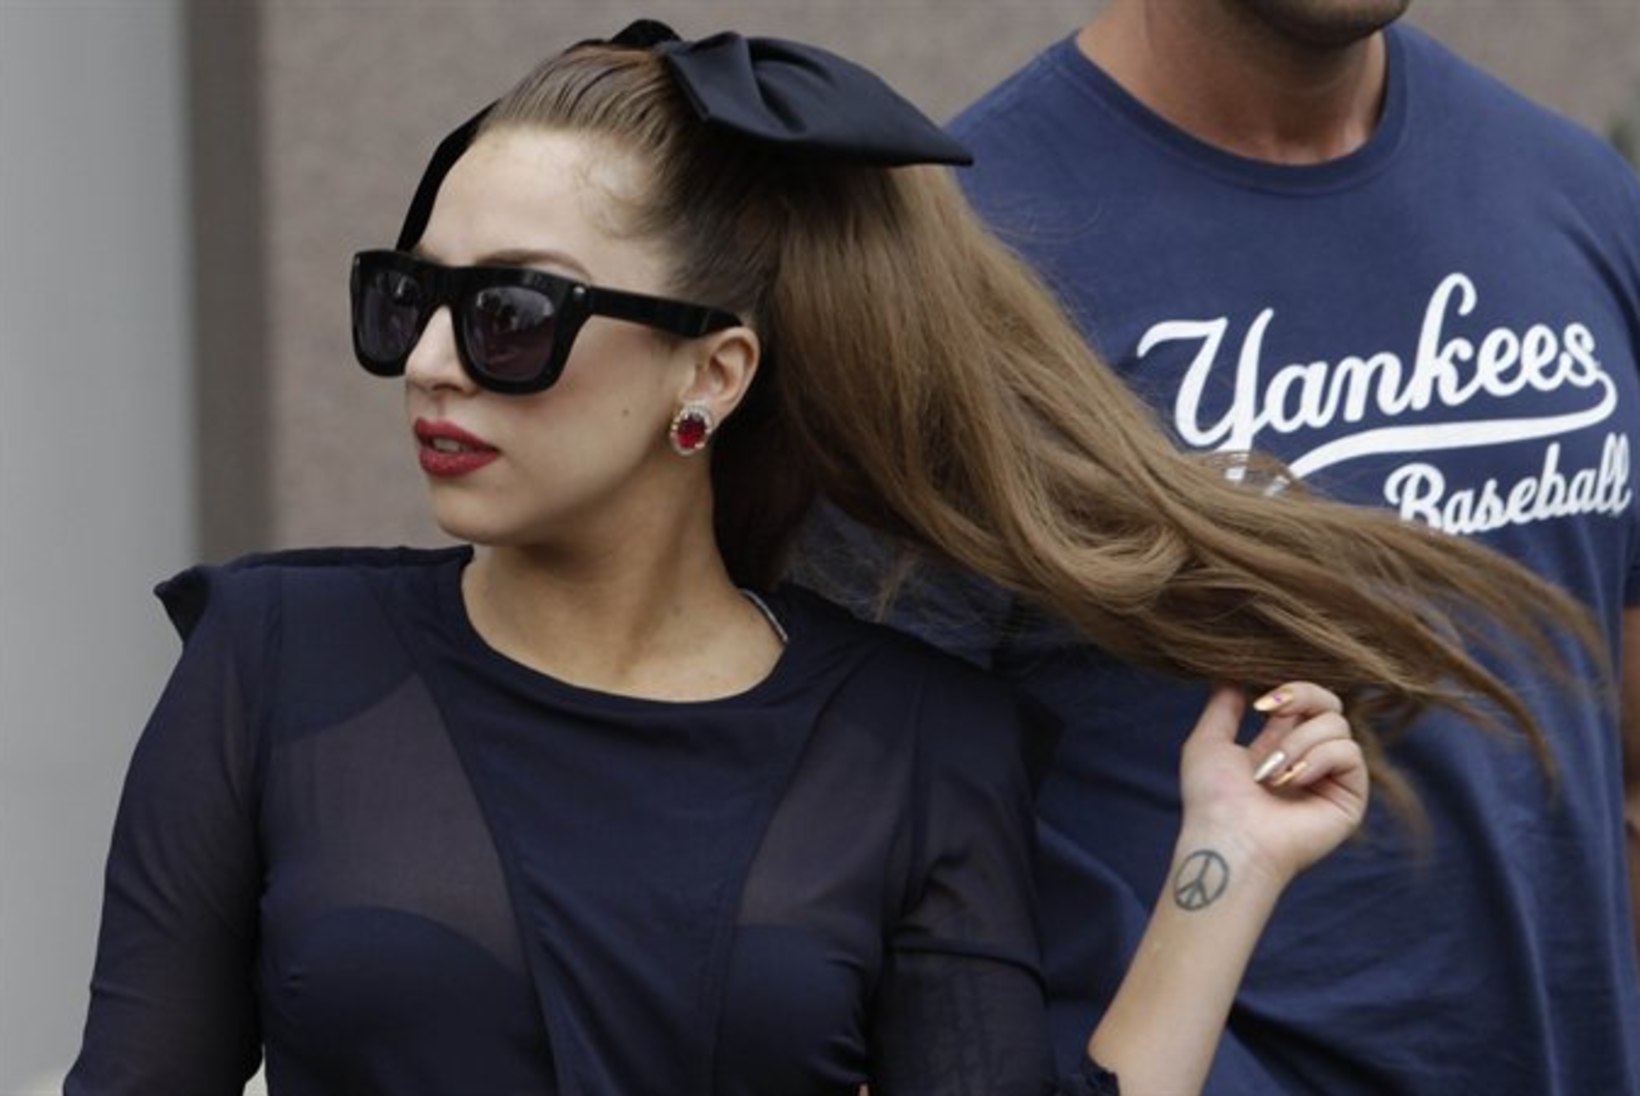 Lady Gaga kinkis peikale sünnipäevaks 43 414 eurot maksnud ... koti